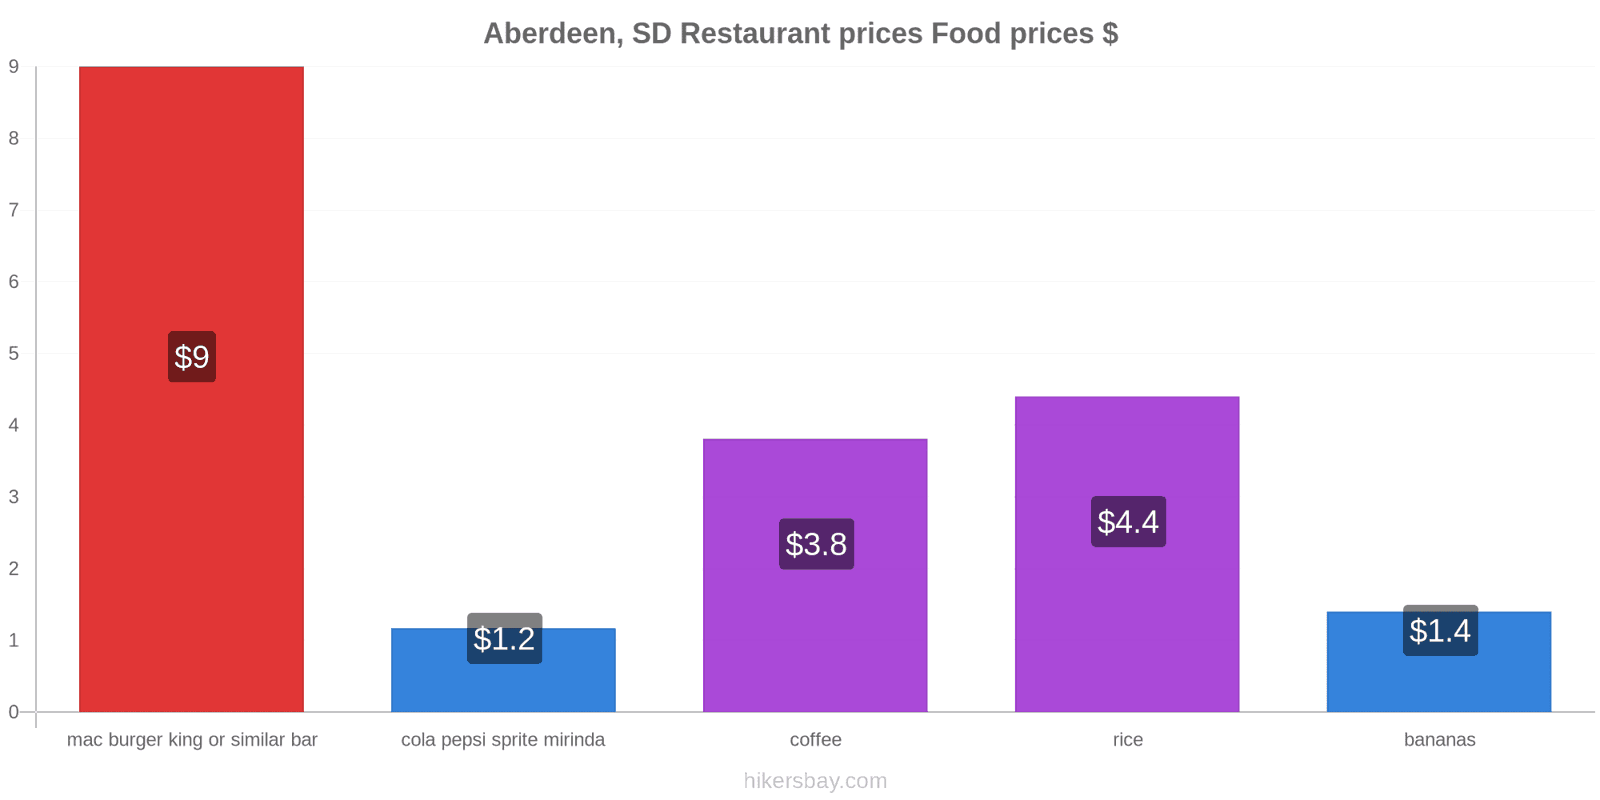 Aberdeen, SD price changes hikersbay.com